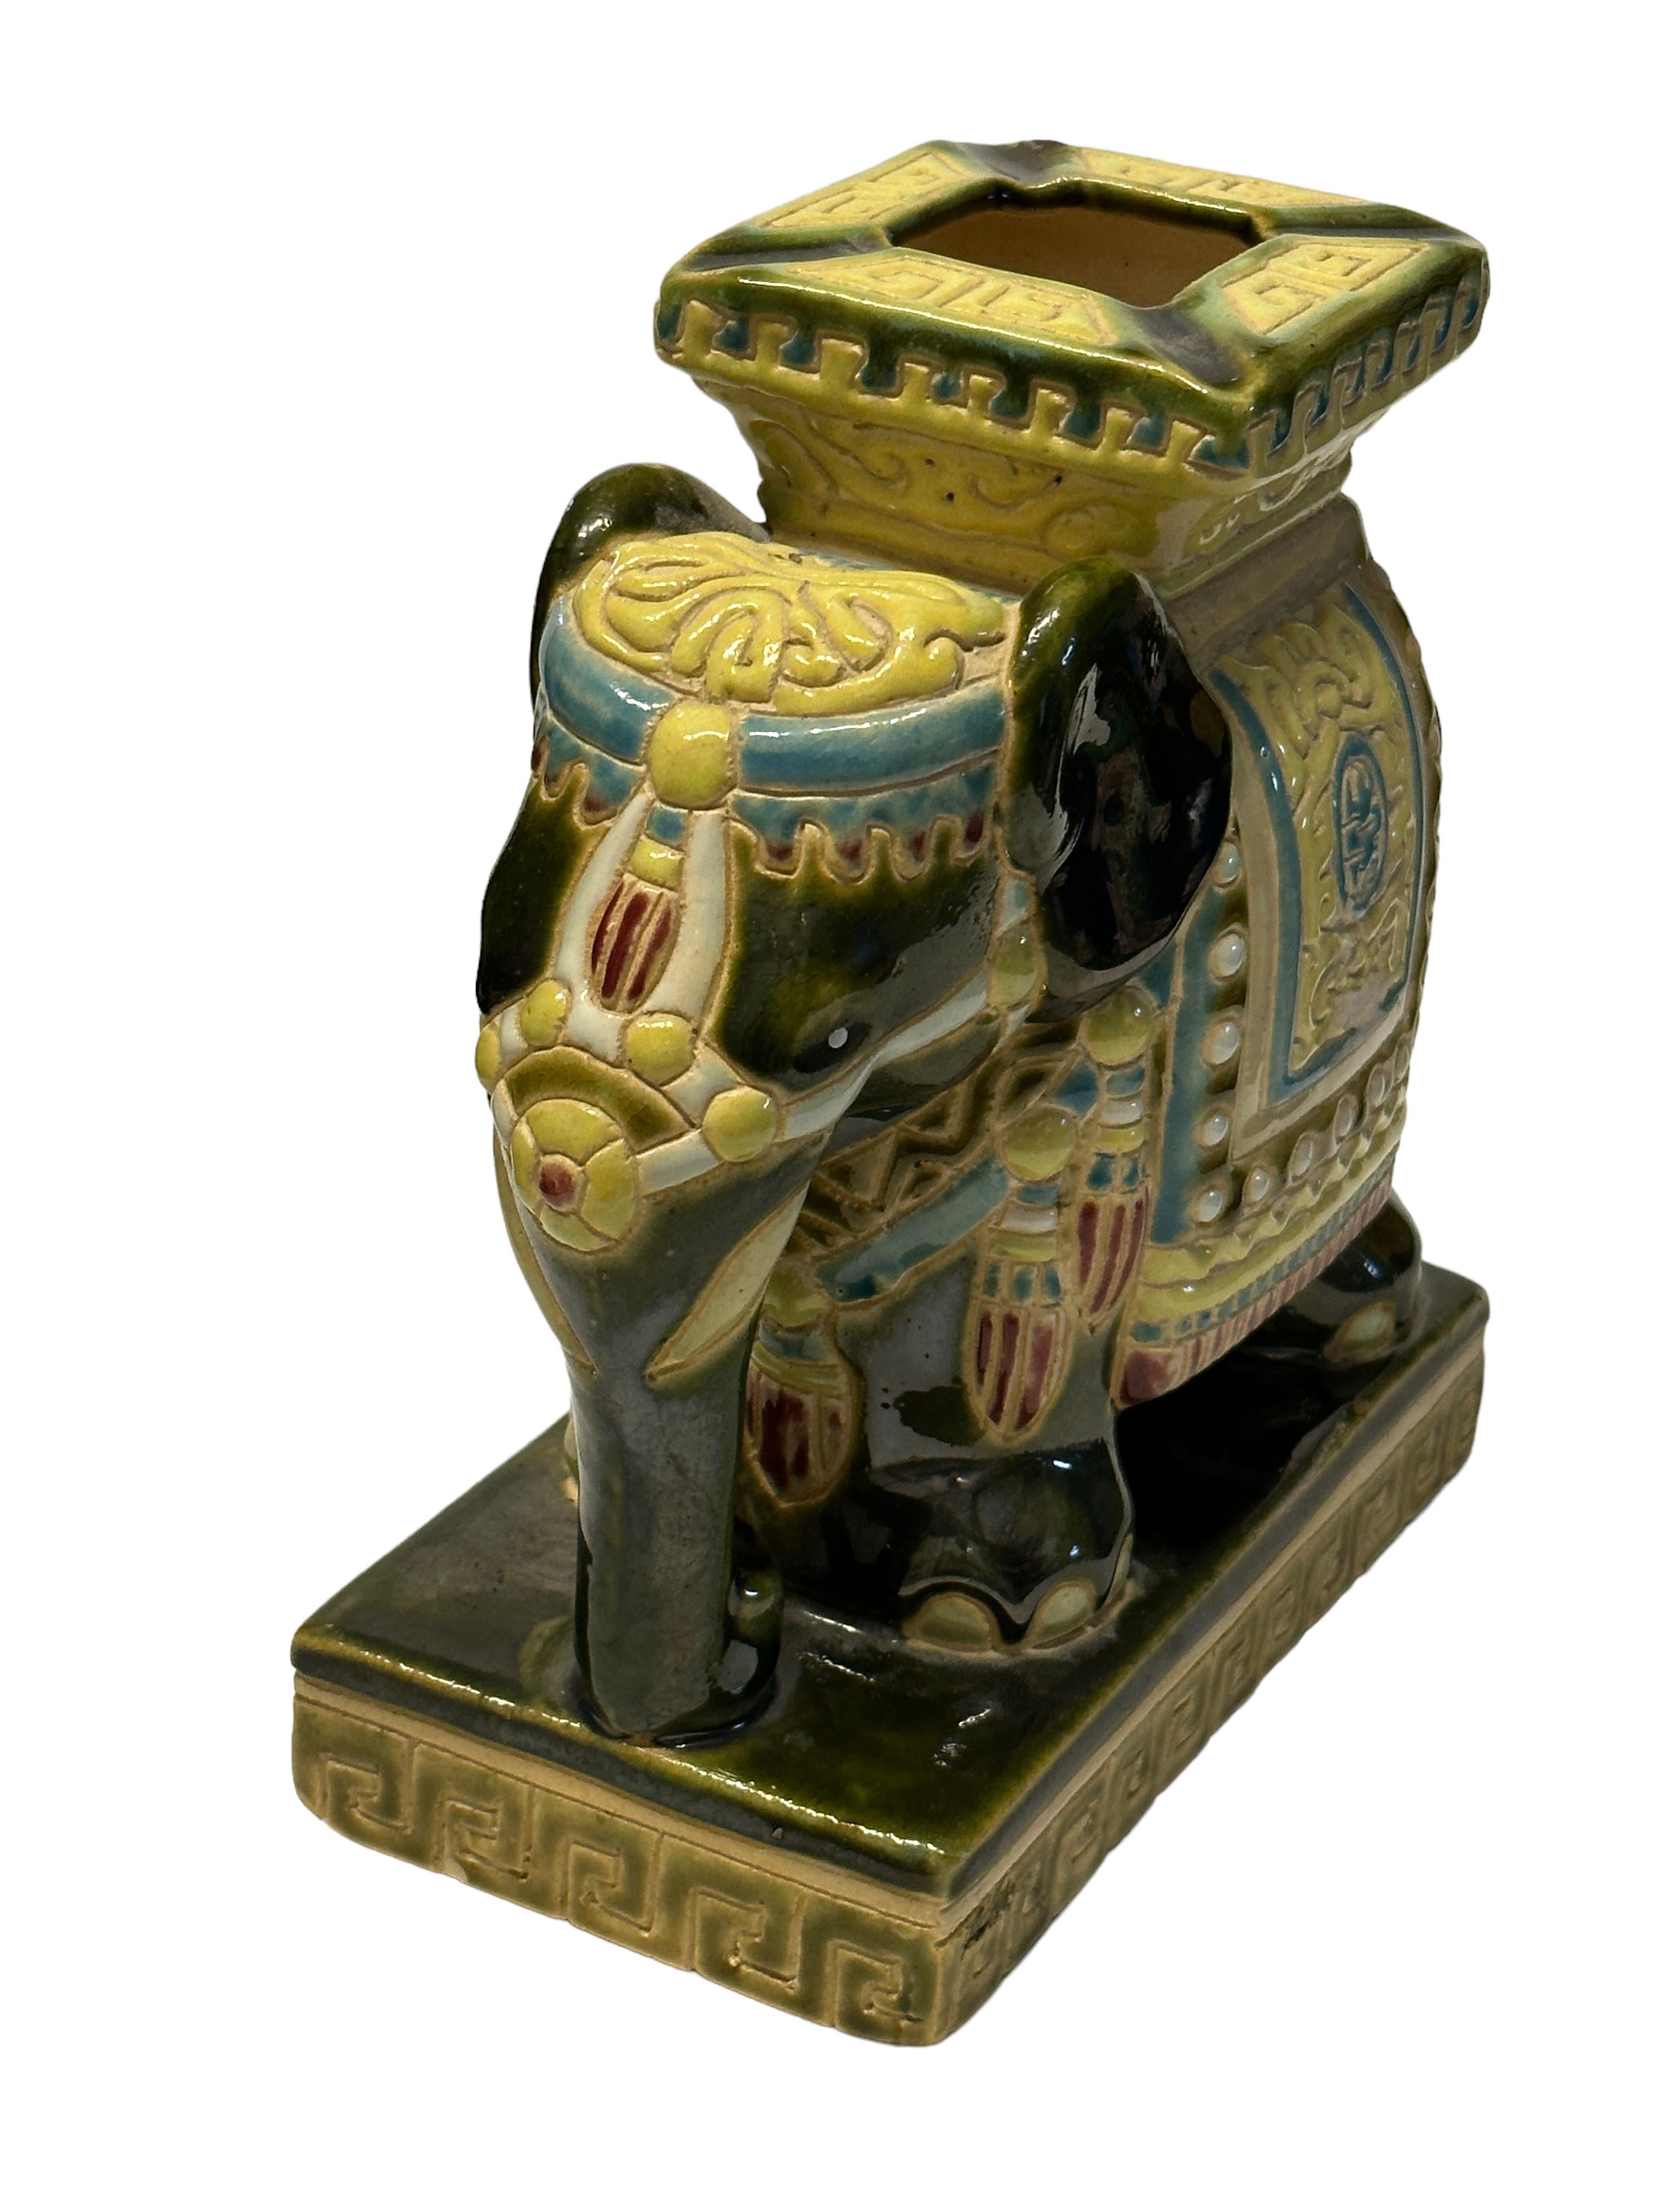 Petite Mitte des 20. Jahrhunderts glasierte Keramik Elefant Aschenbecher. Handgefertigt aus Keramik. Eine schöne Ergänzung für Ihr Zuhause, Ihre Männerhöhle oder Ihre Bar.
  